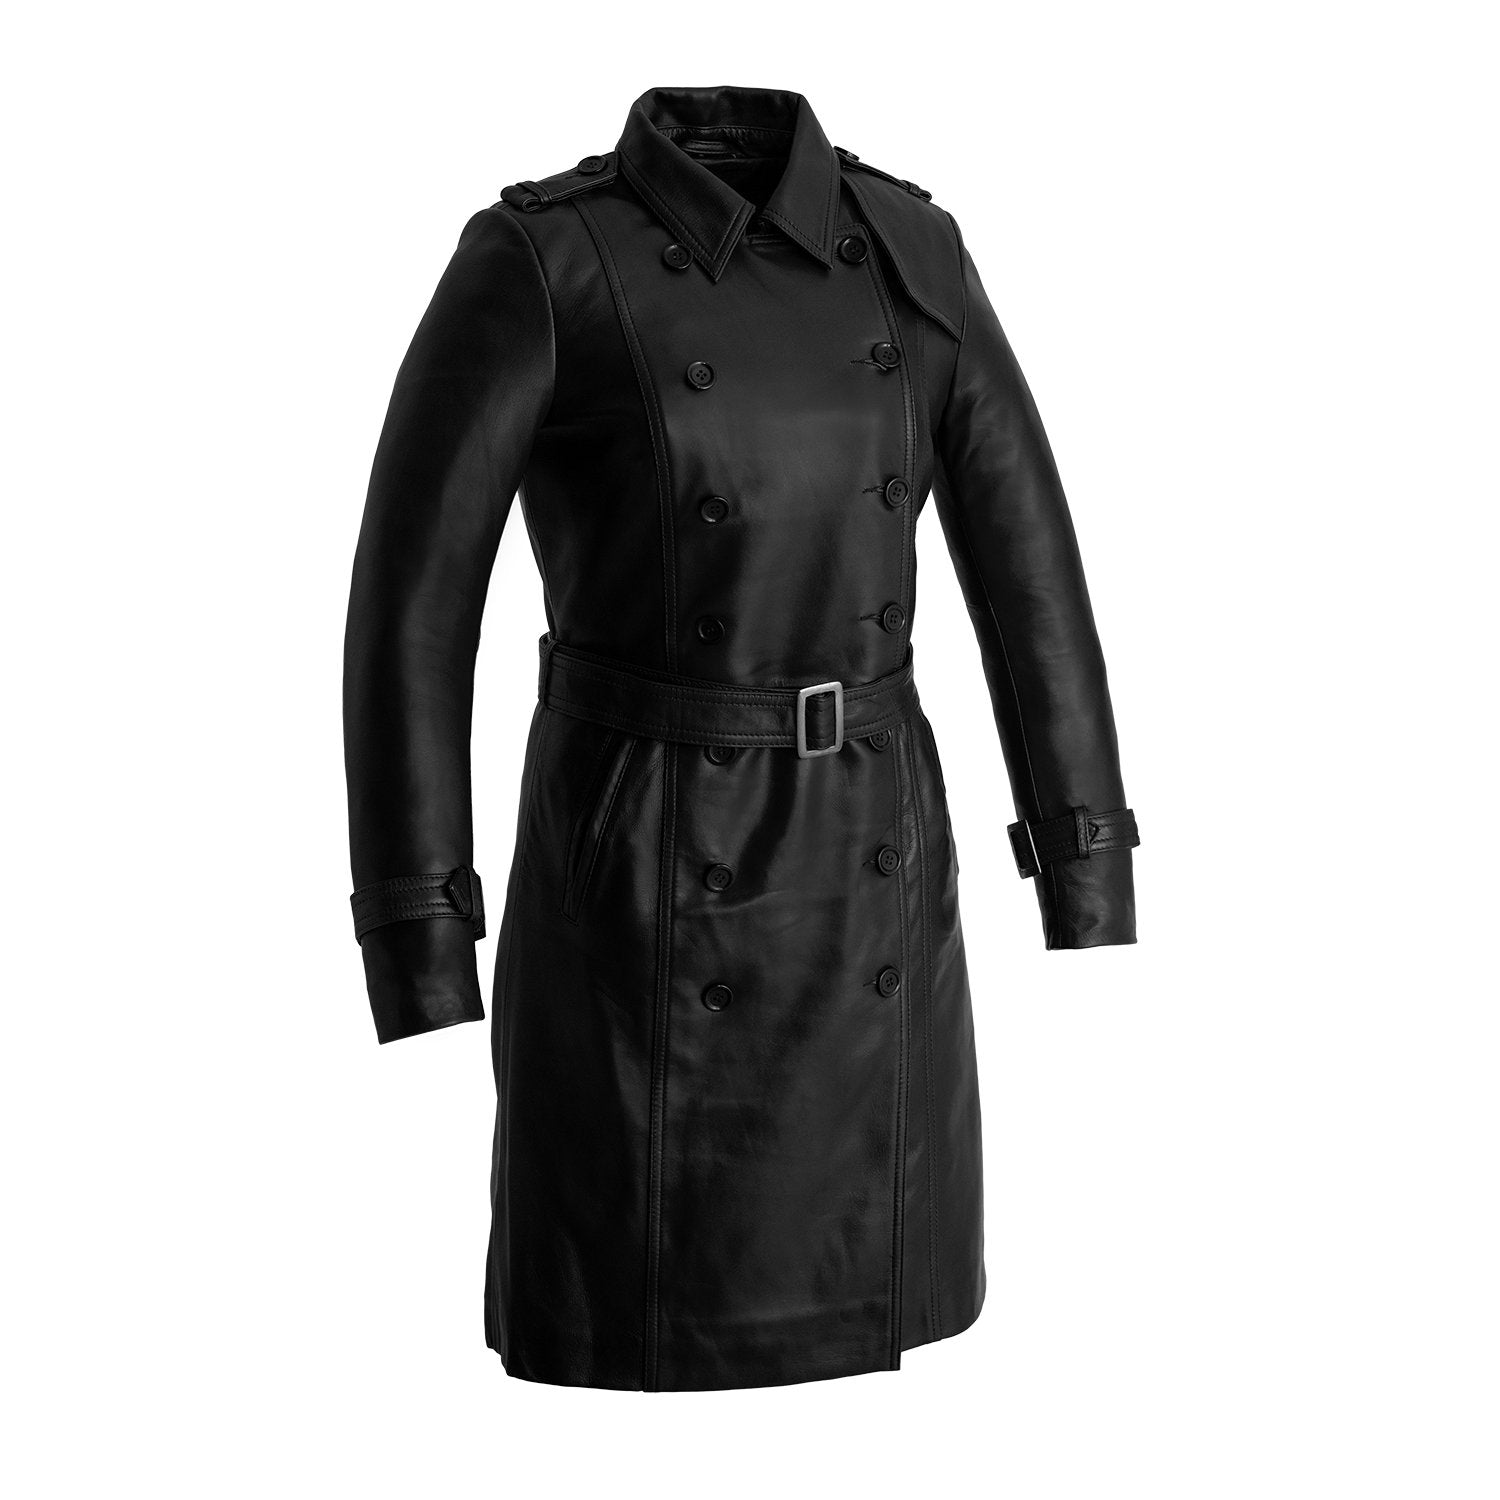 Olivia - Women's Leather Jacket Black Jacket Best Leather Ny XS Black 